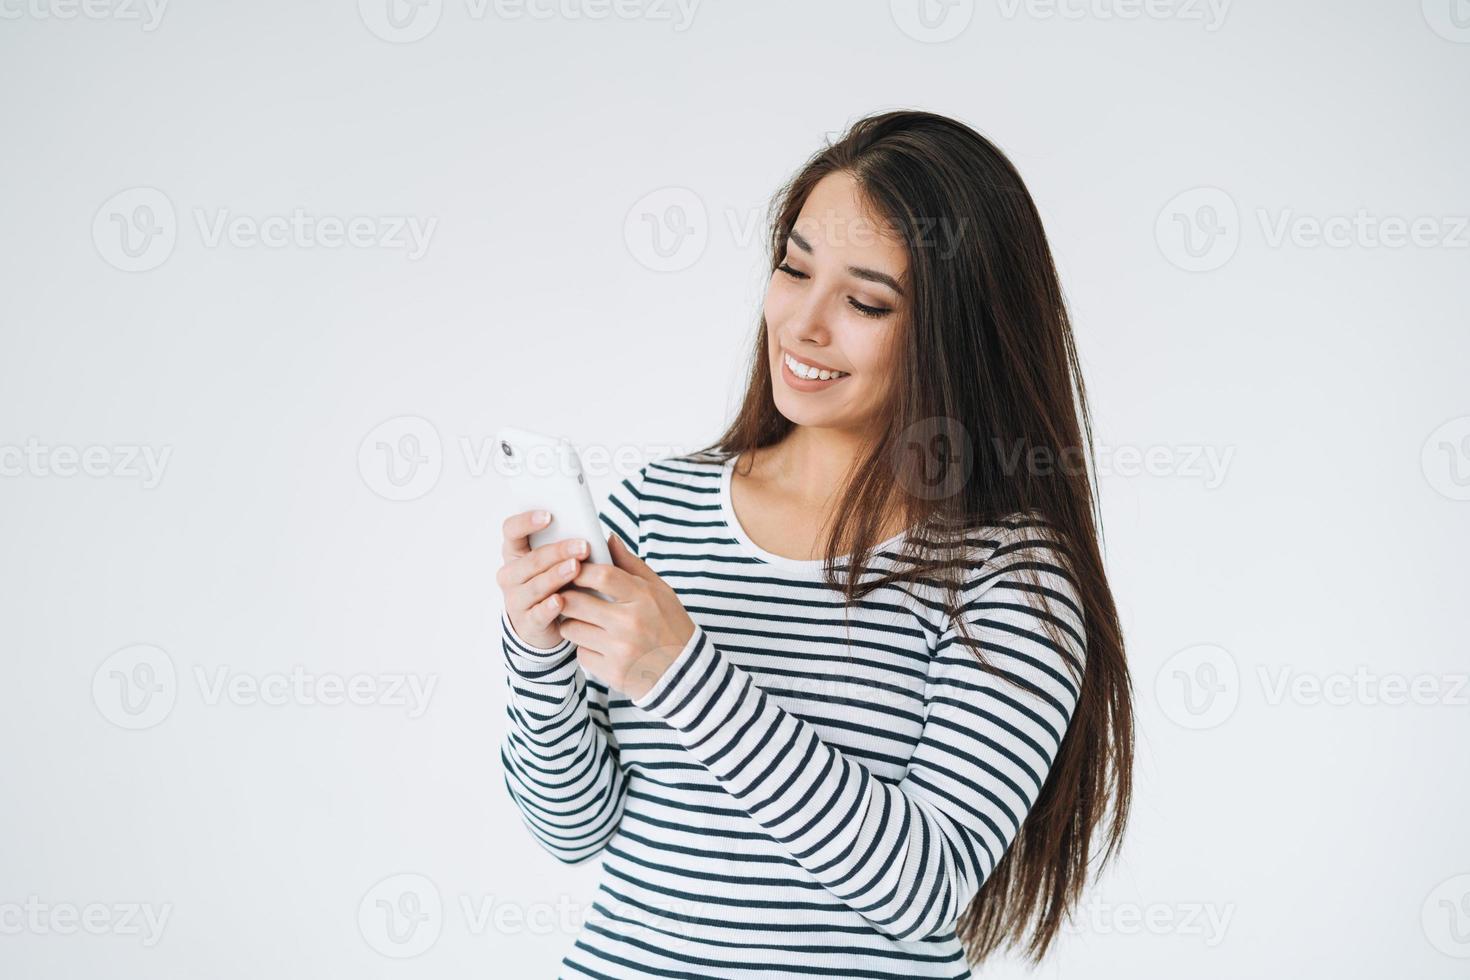 jeune femme asiatique heureuse aux cheveux longs en manches longues rayées utilisant un téléphone portable sur fond blanc isolé photo